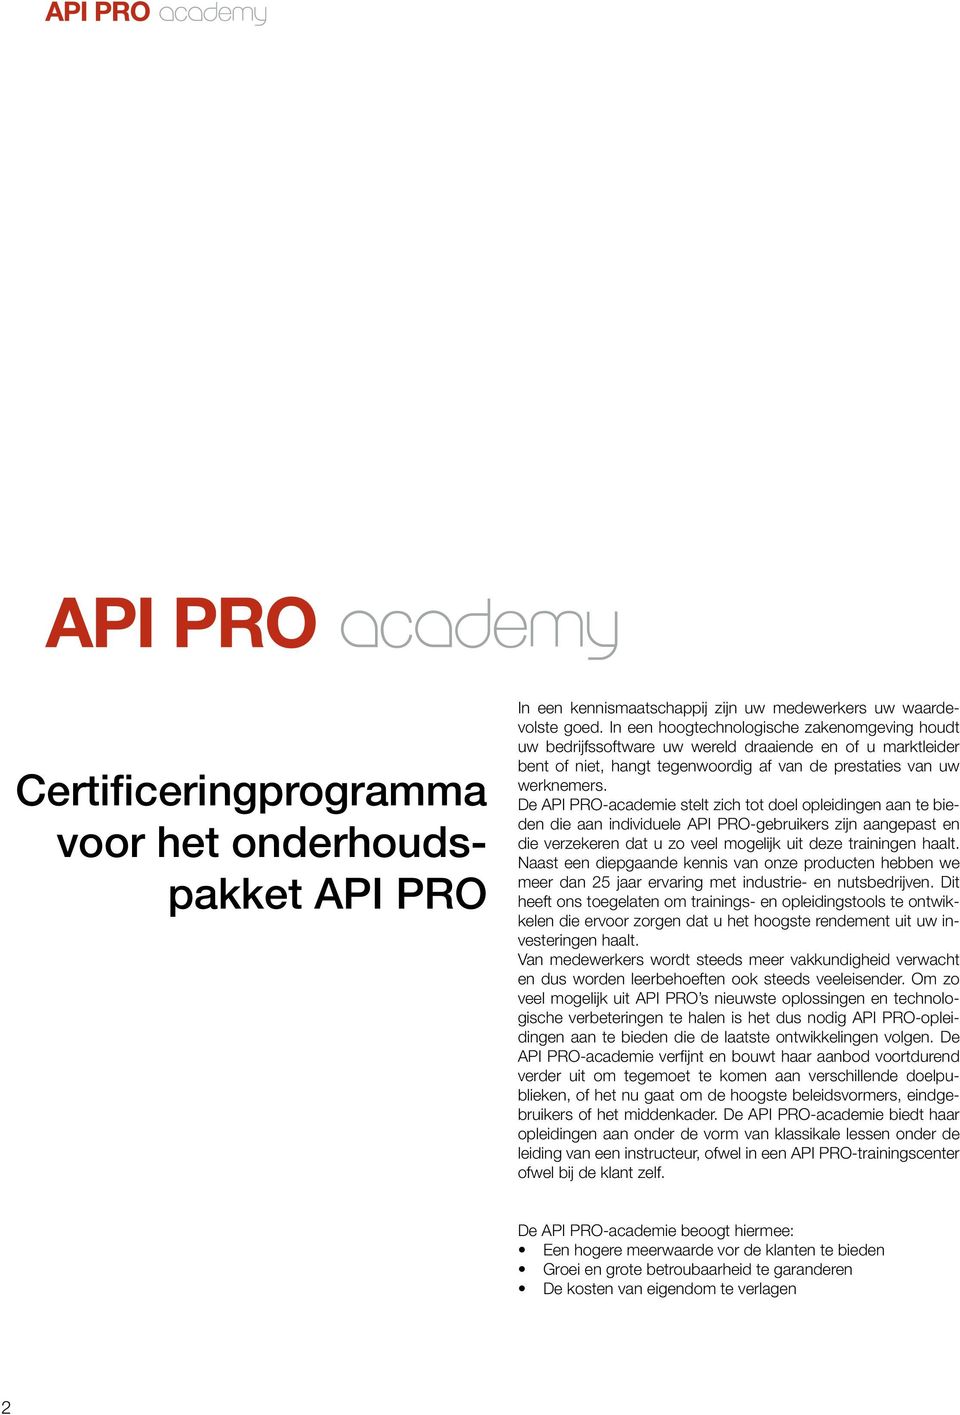 De API PRO-academie stelt zich tot doel opleidingen aan te bieden die aan individuele API PRO-gebruikers zijn aangepast en die verzekeren dat u zo veel mogelijk uit deze trainingen haalt.